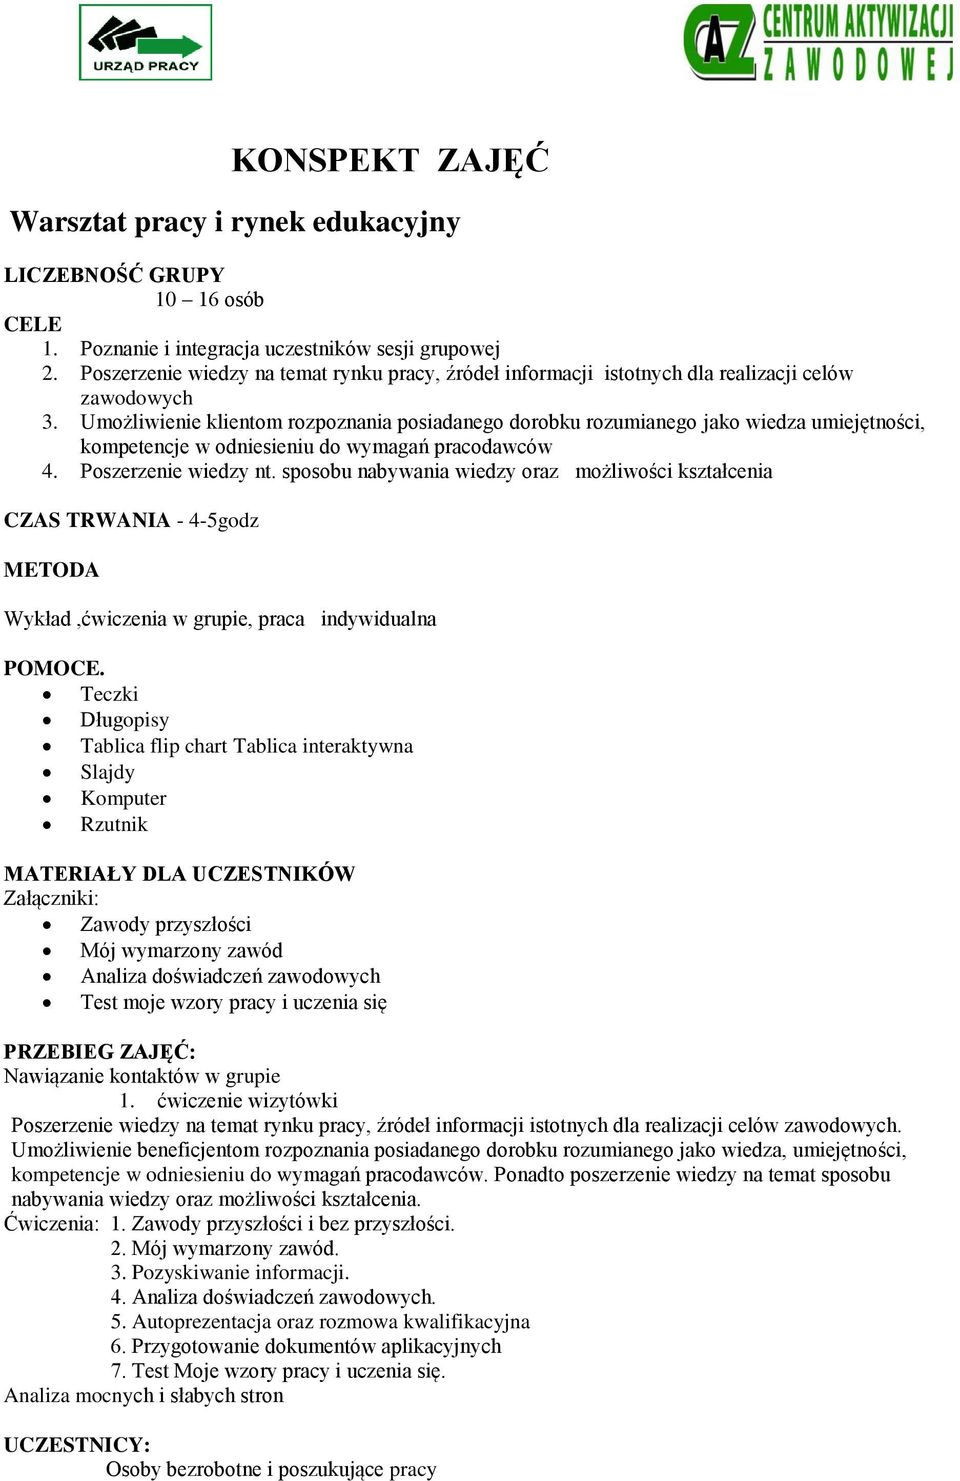 KONSPEKT ZAJĘĆ. Warsztat pracy i rynek edukacyjny - PDF Free Download